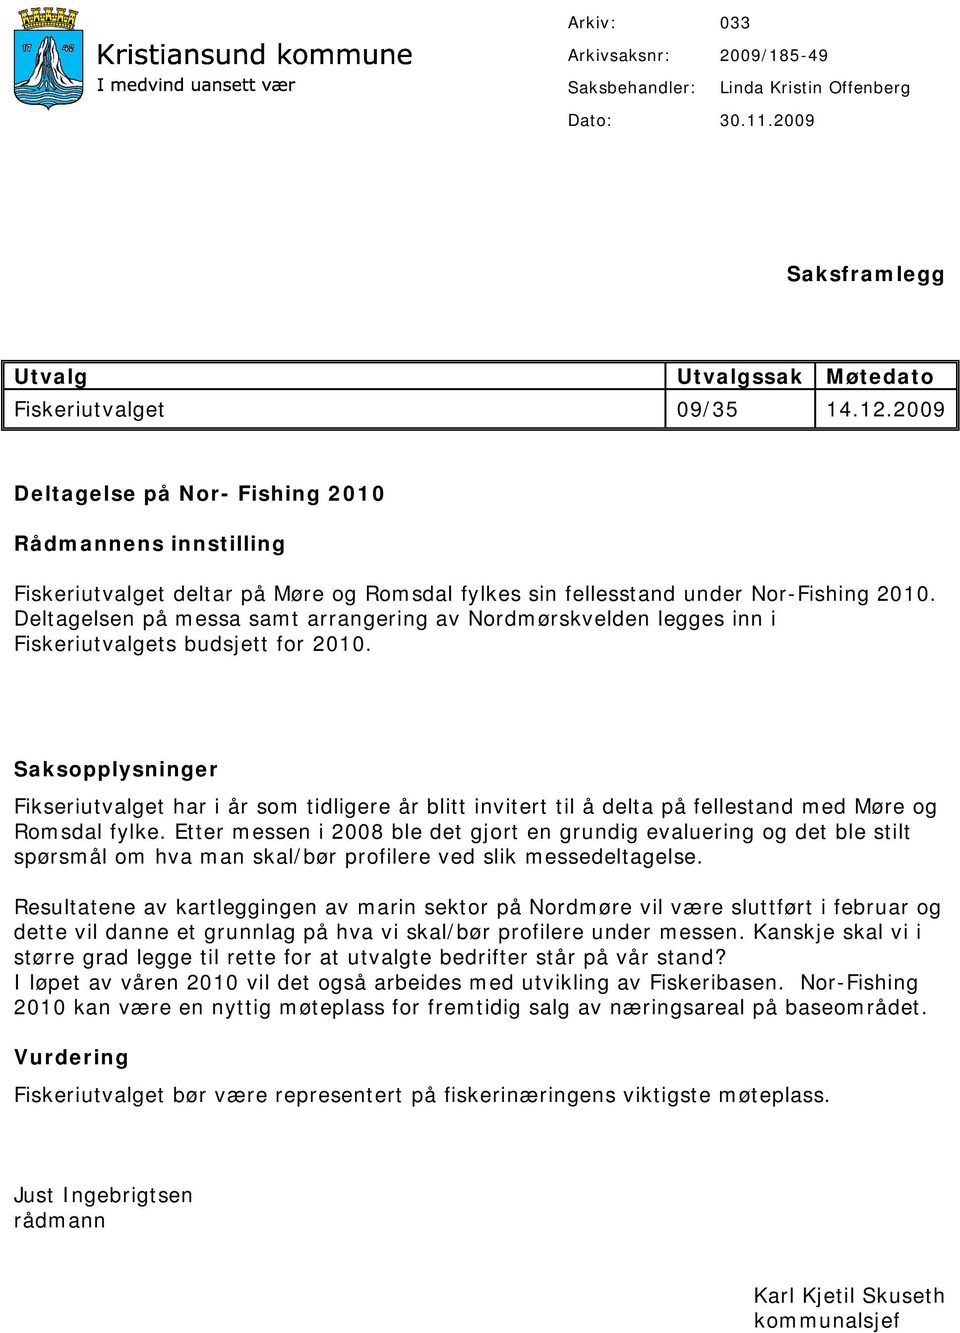 Deltagelsen på messa samt arrangering av Nordmørskvelden legges inn i Fiskeriutvalgets budsjett for 2010.